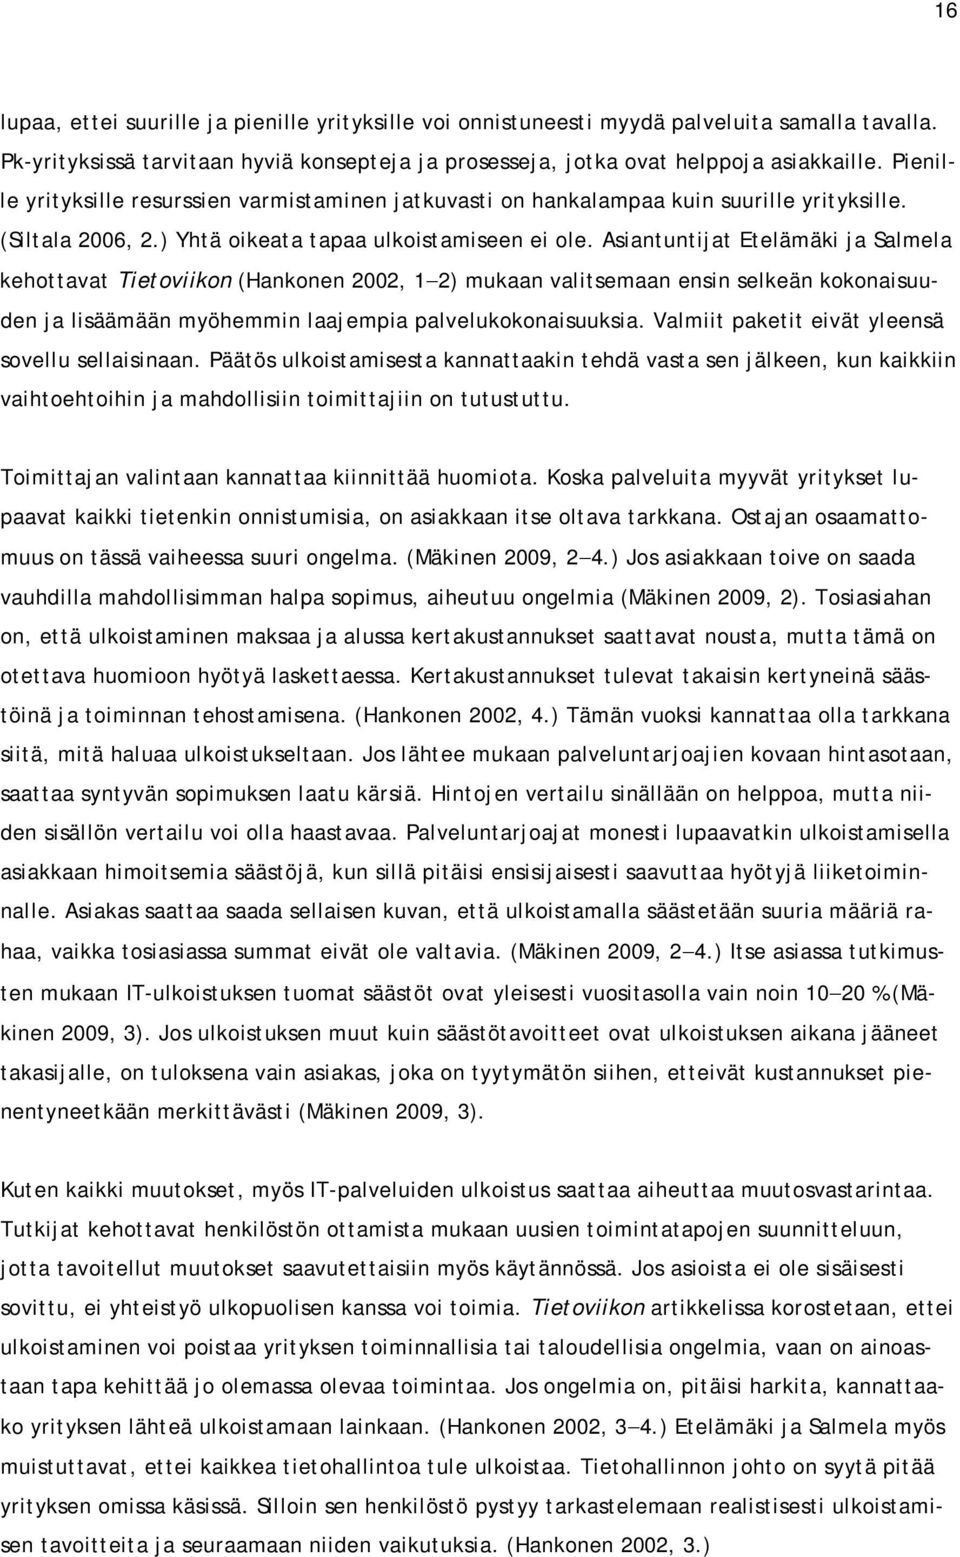 Asiantuntijat Etelämäki ja Salmela kehottavat Tietoviikon (Hankonen 2002, 1 2) mukaan valitsemaan ensin selkeän kokonaisuuden ja lisäämään myöhemmin laajempia palvelukokonaisuuksia.